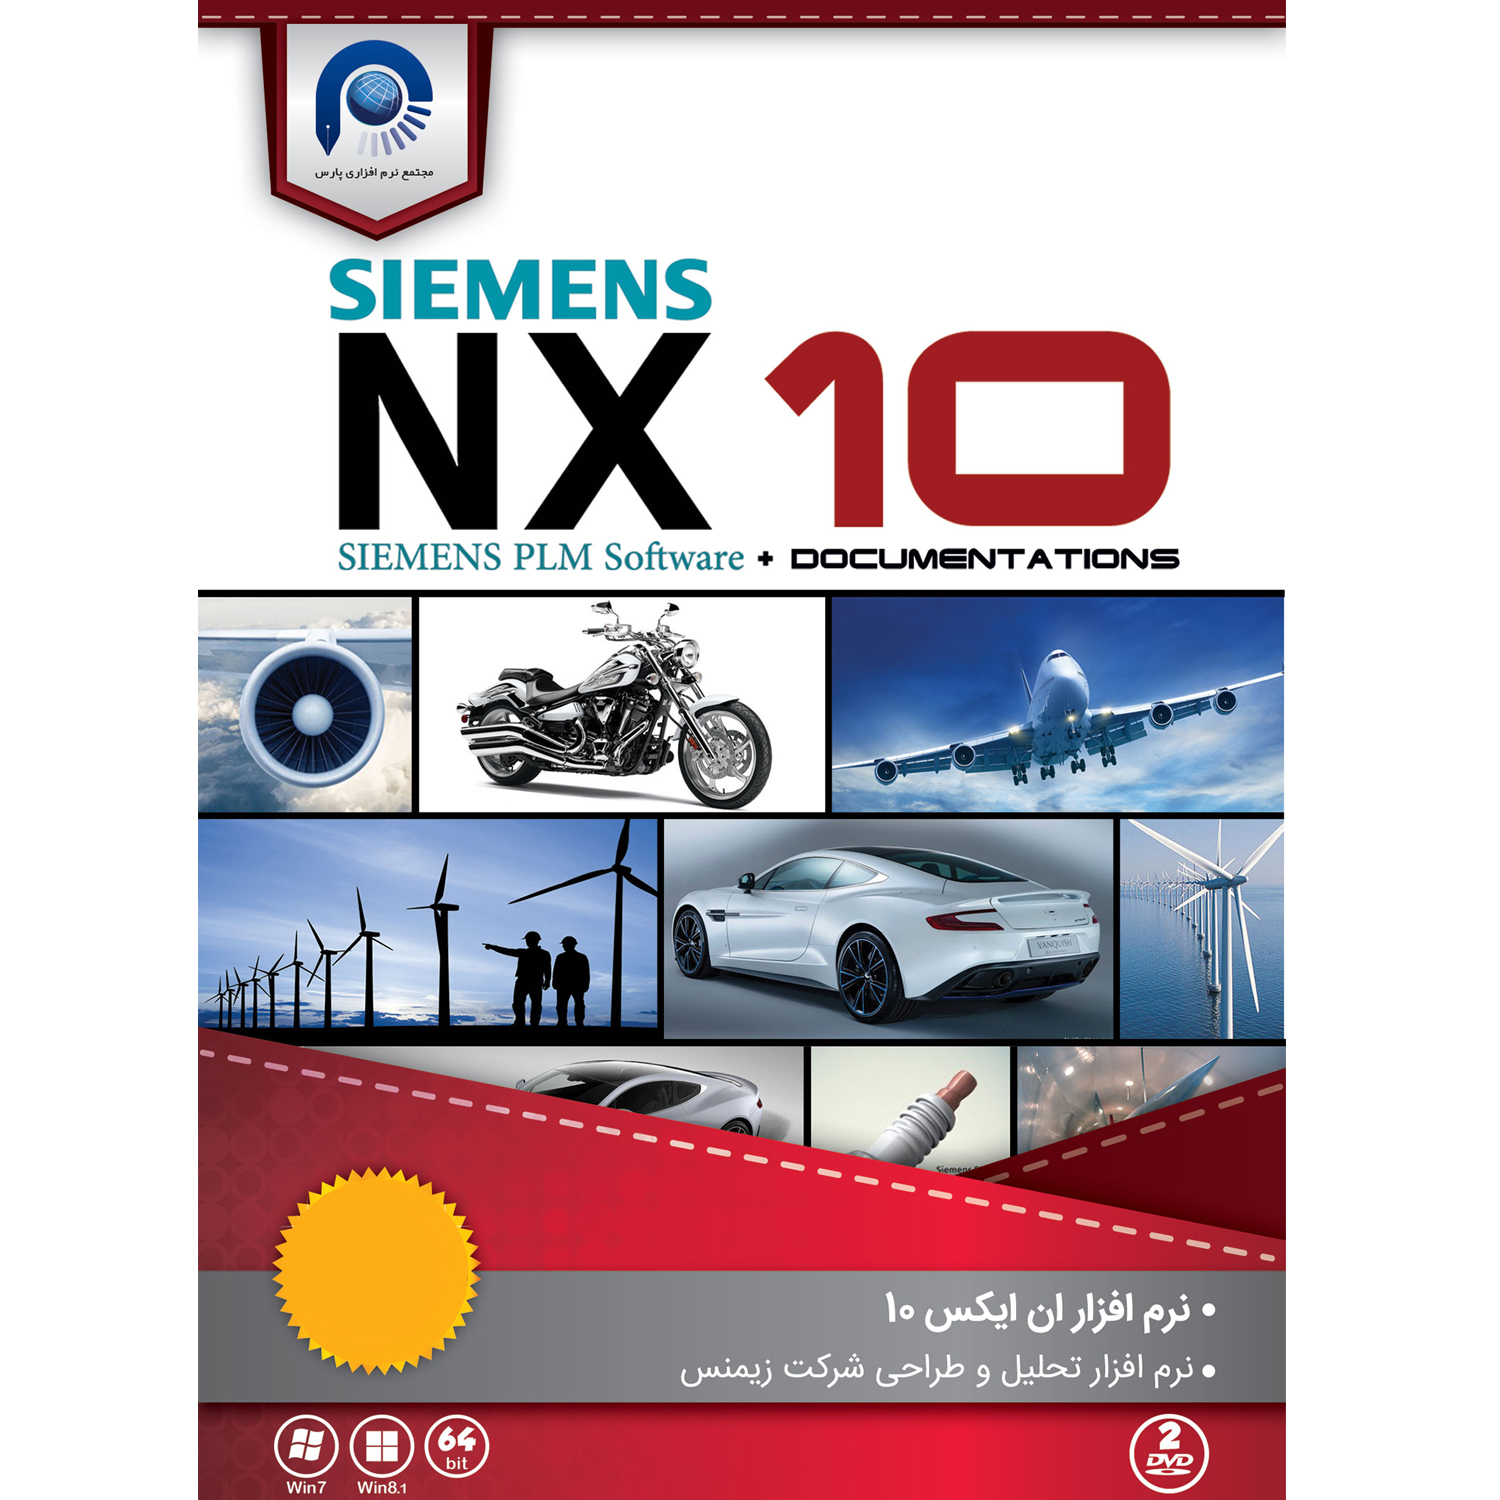 نرم افزار  SIEMENS NX10  نشر مجتمع نرم افزاری پارس